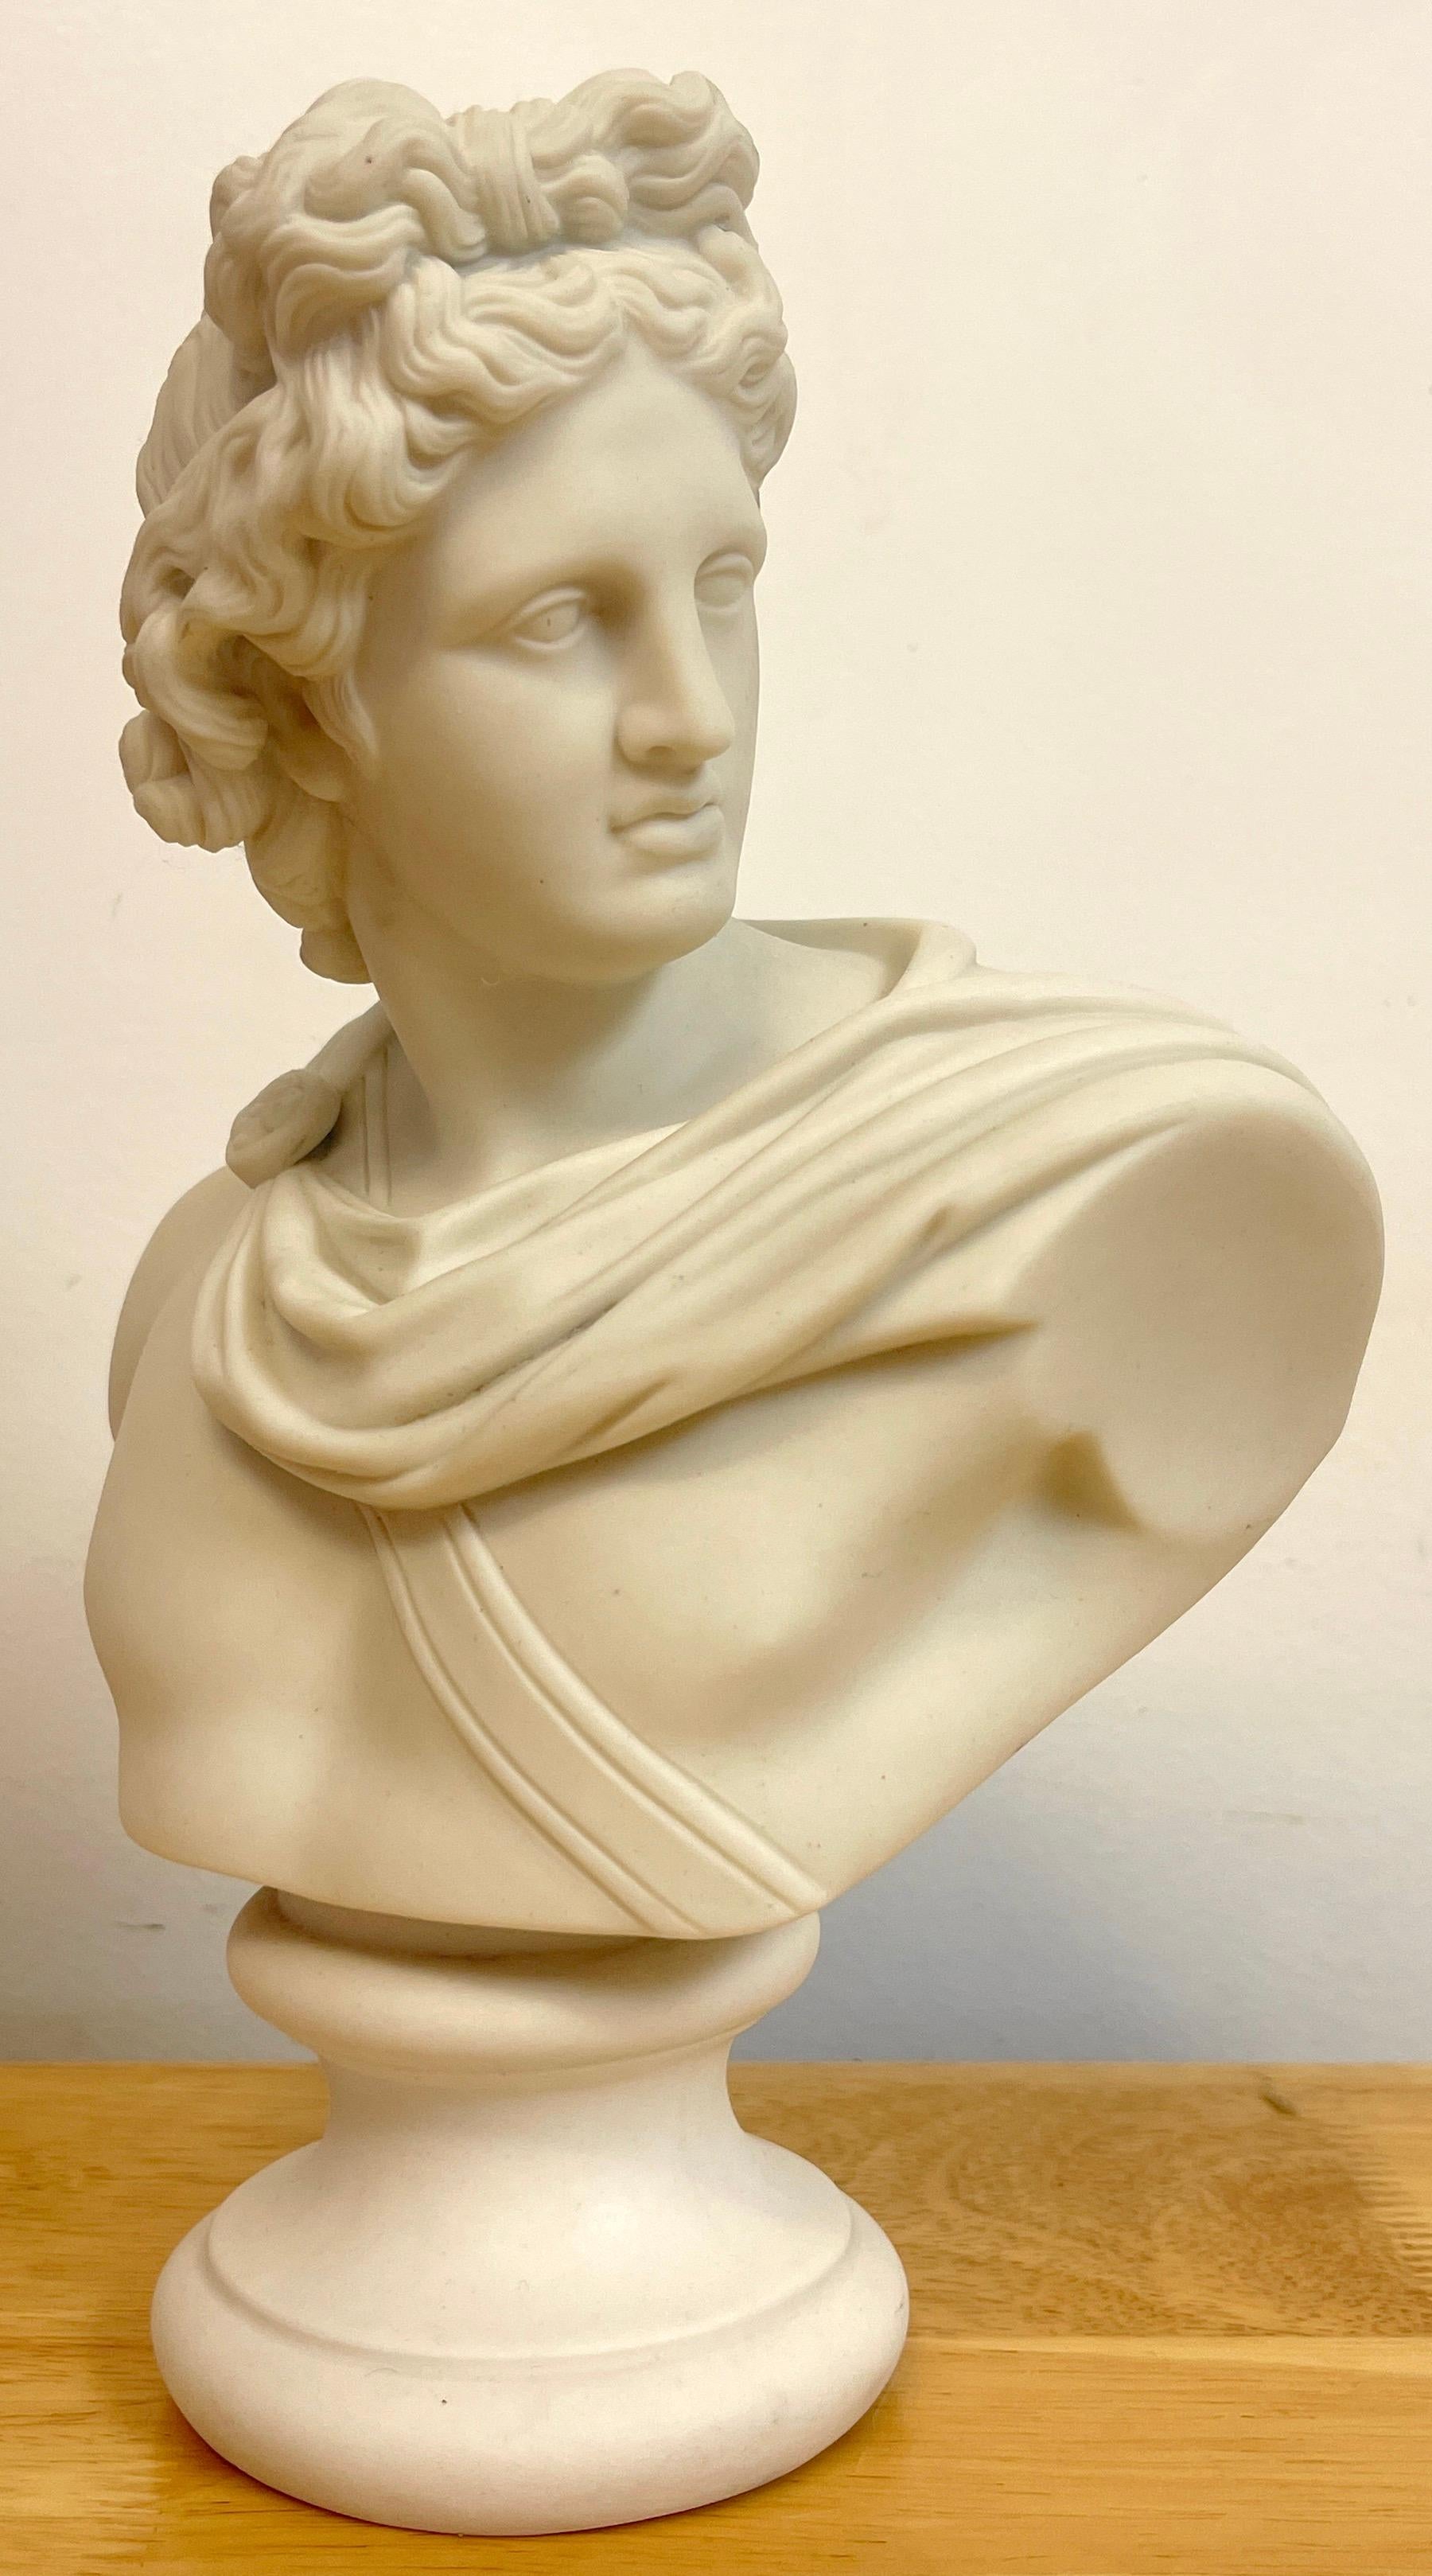 Diminutif buste d'Apollo Belvedere du 19e siècle, un exemple bien exécuté, monté sur une base de solace de 3 pouces de diamètre. Non marqué.